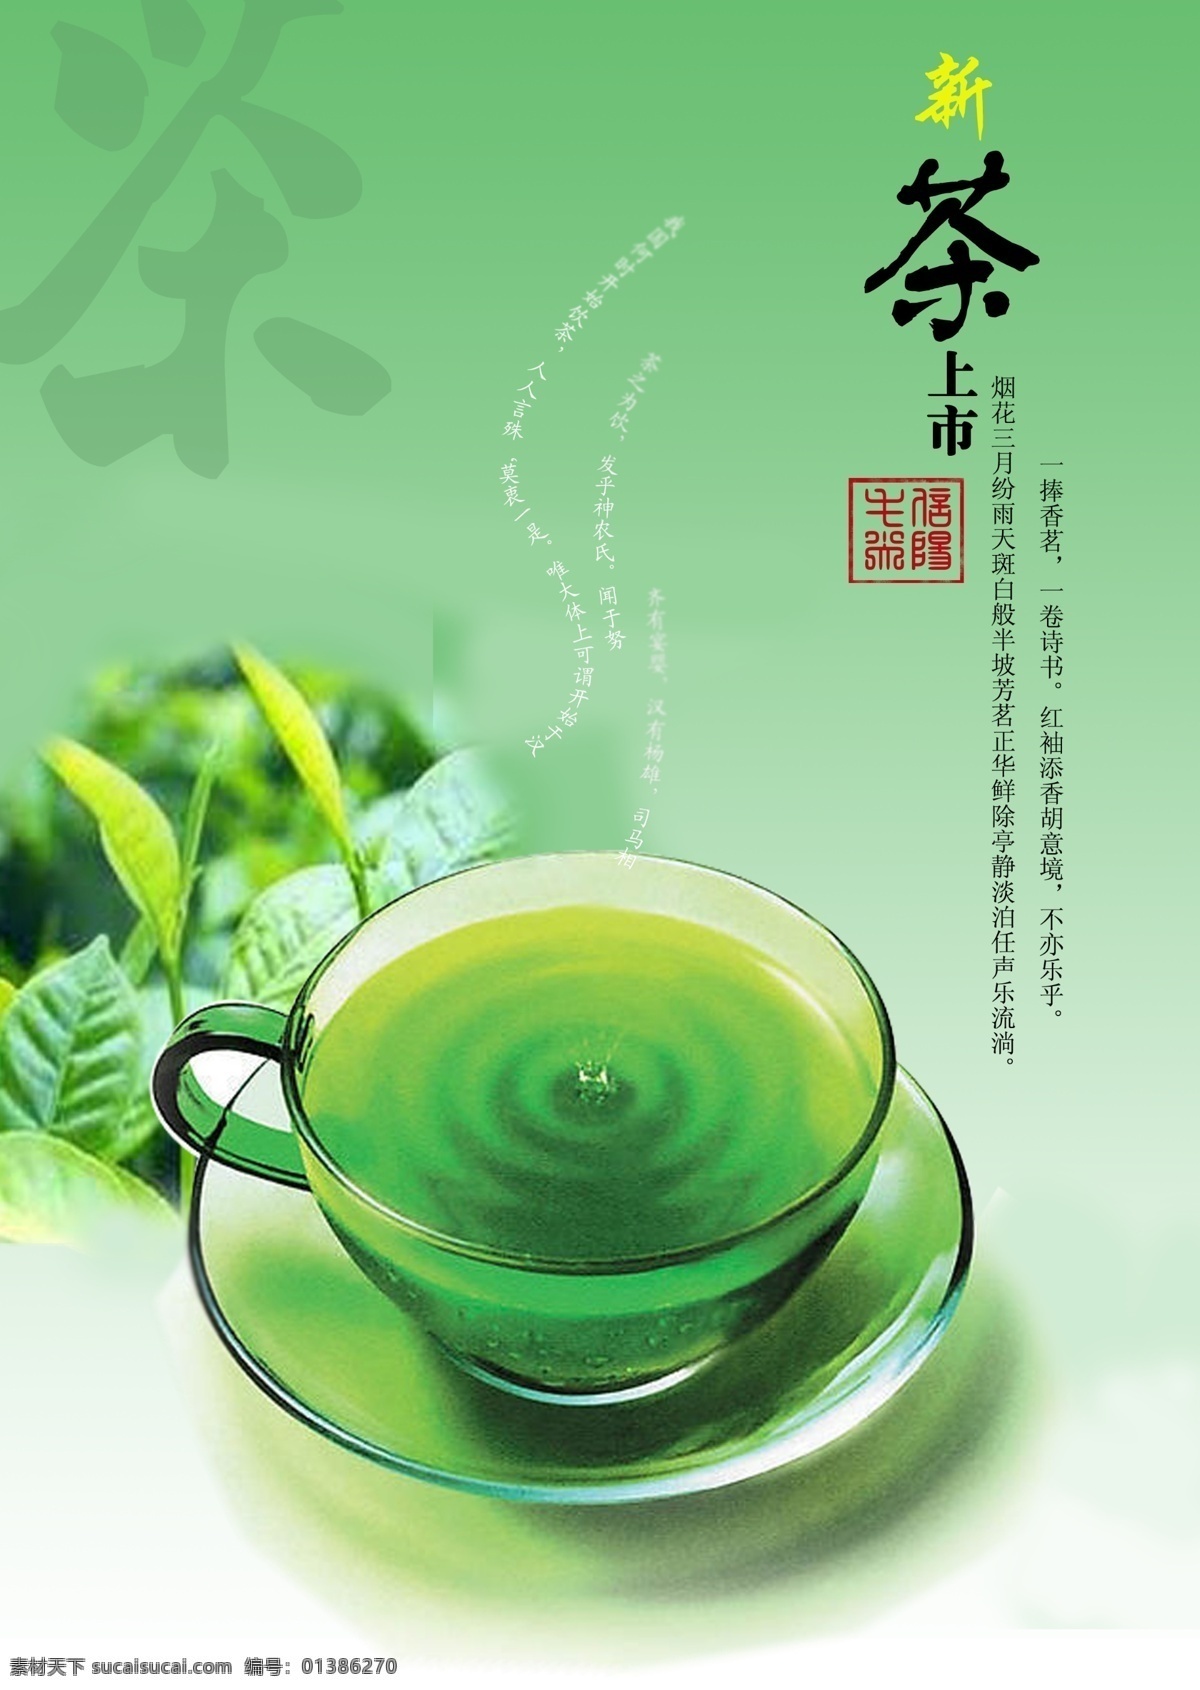 信阳 毛尖 招贴 海报 春茶 茶类招贴 茶类海报 绿茶 招贴设计